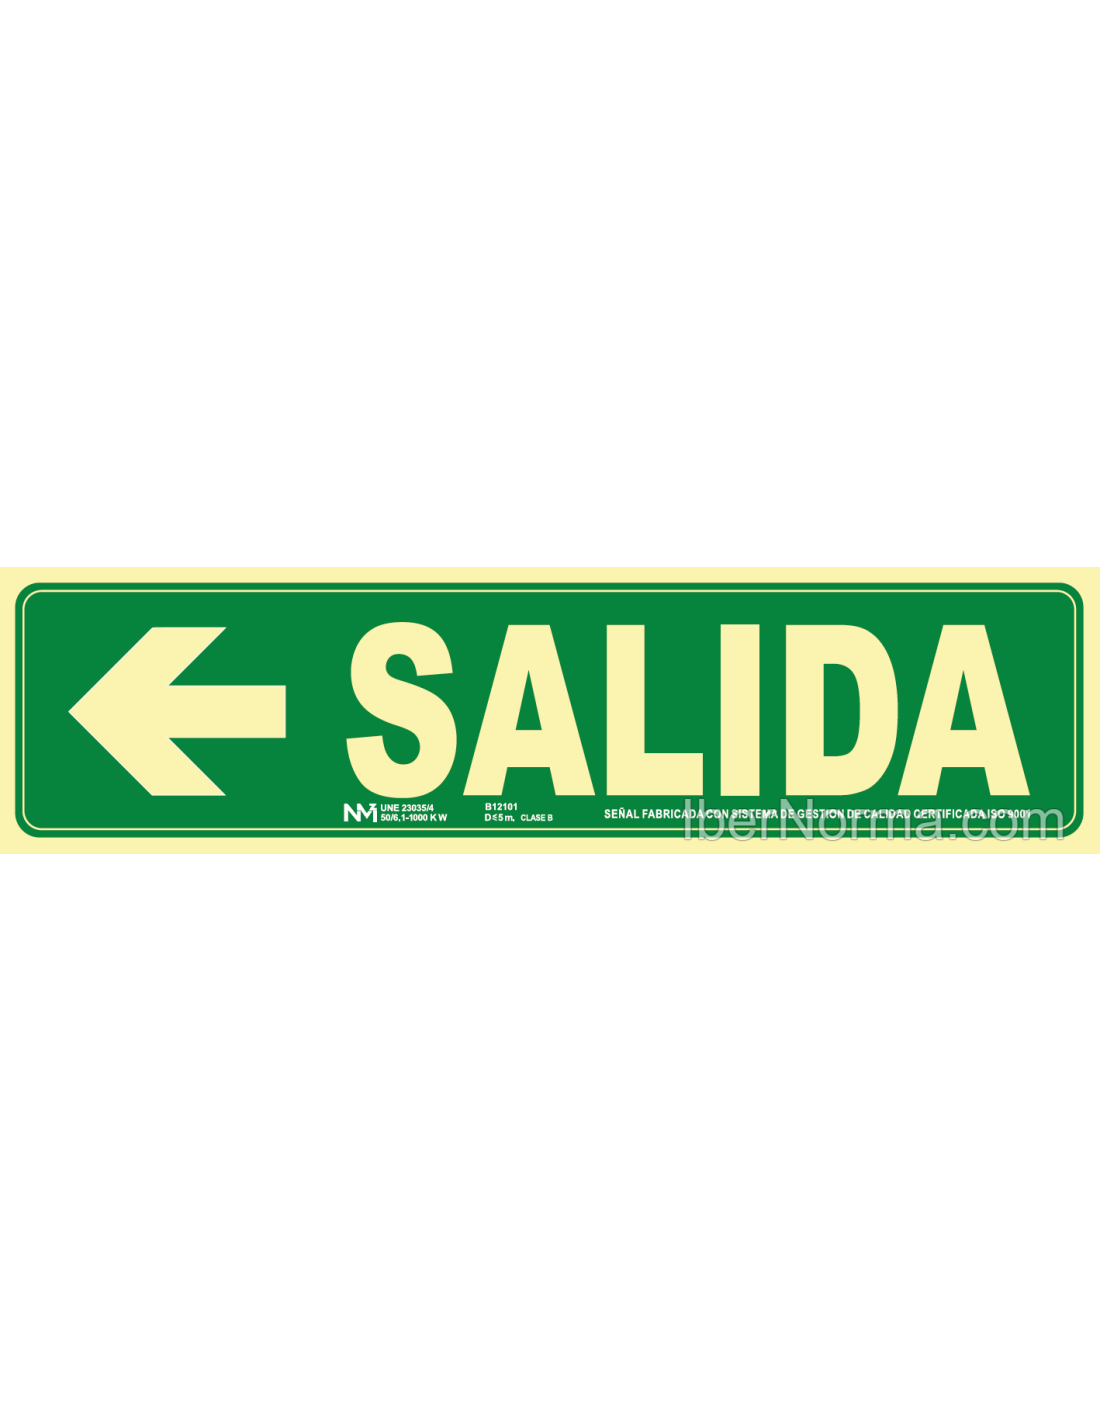 SEÑAL SALIDA IZQUIERDA PVC 0,7mm CLASE B 10,50x40,20cm